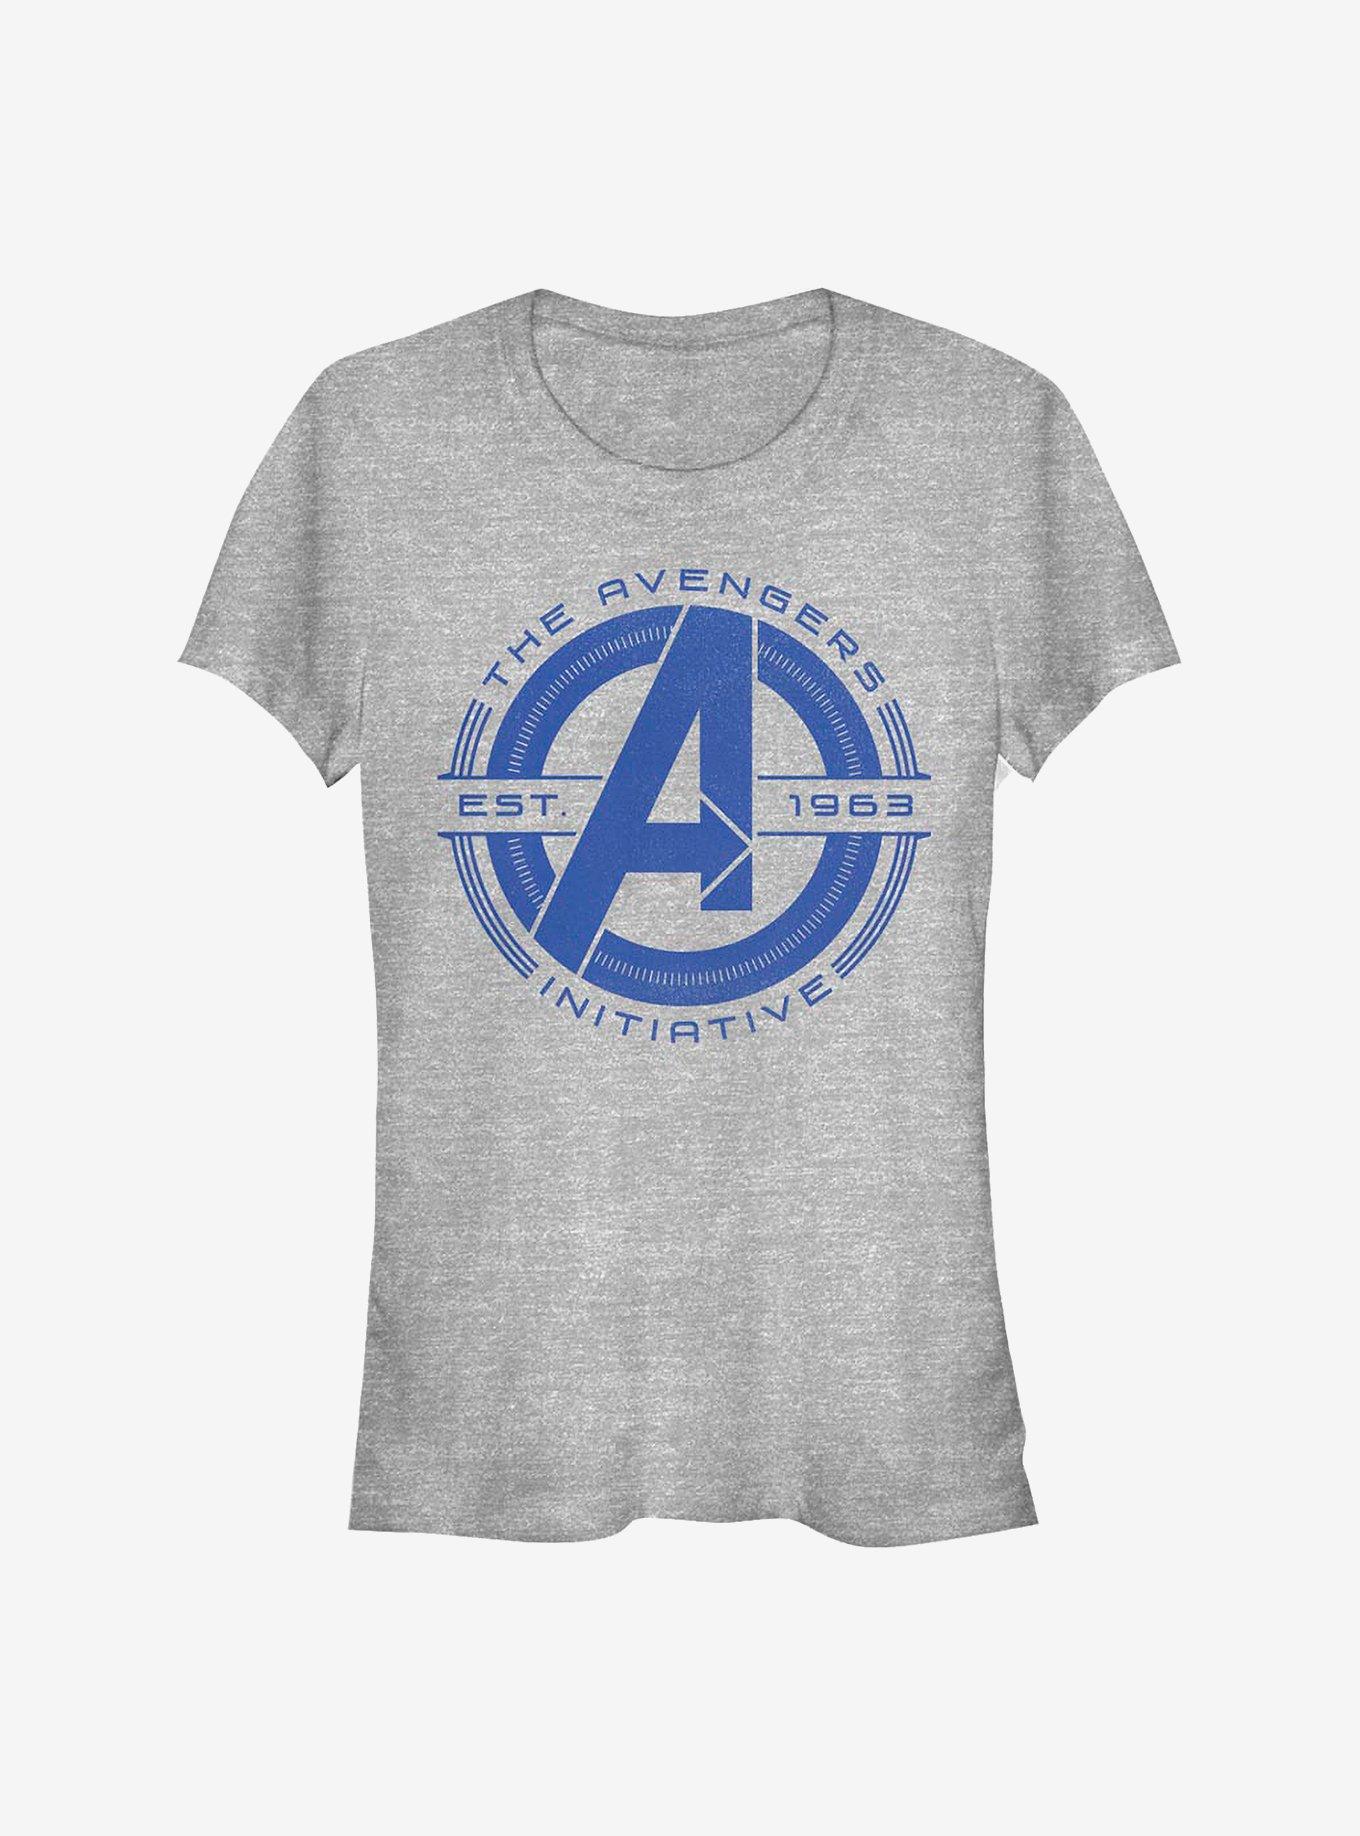 Marvel Avengers Initiative Girls T-Shirt